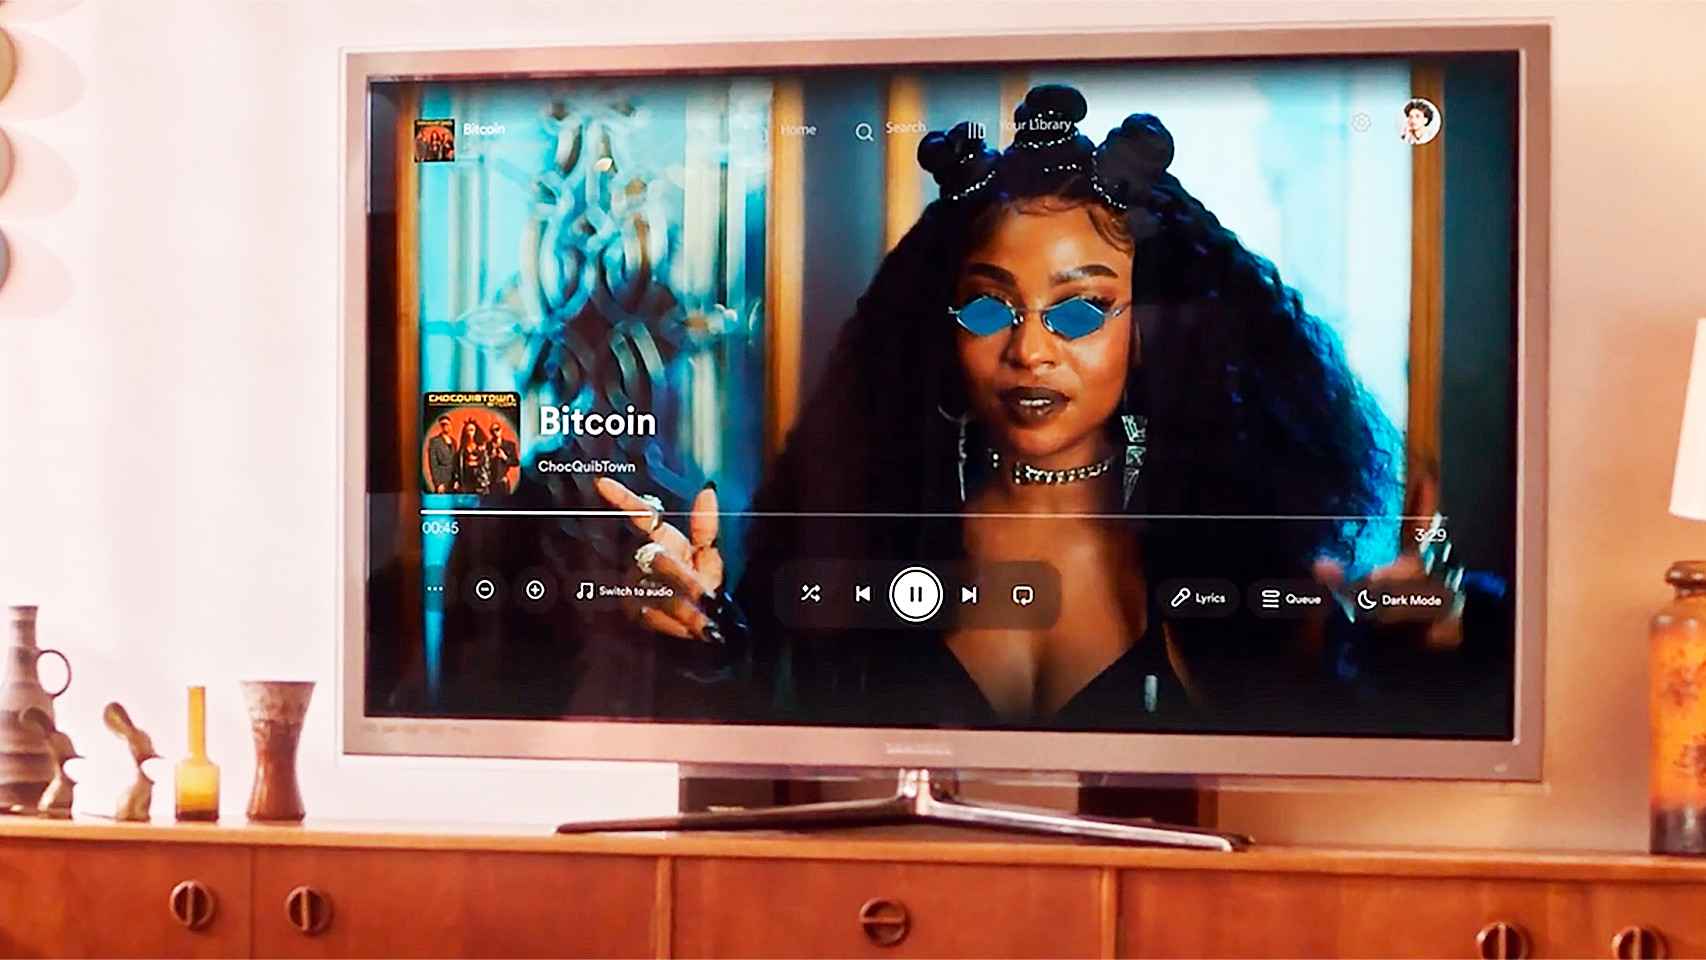 Así se ven los vídeos musicales en Spotify a pantalla completa en una Smart TV